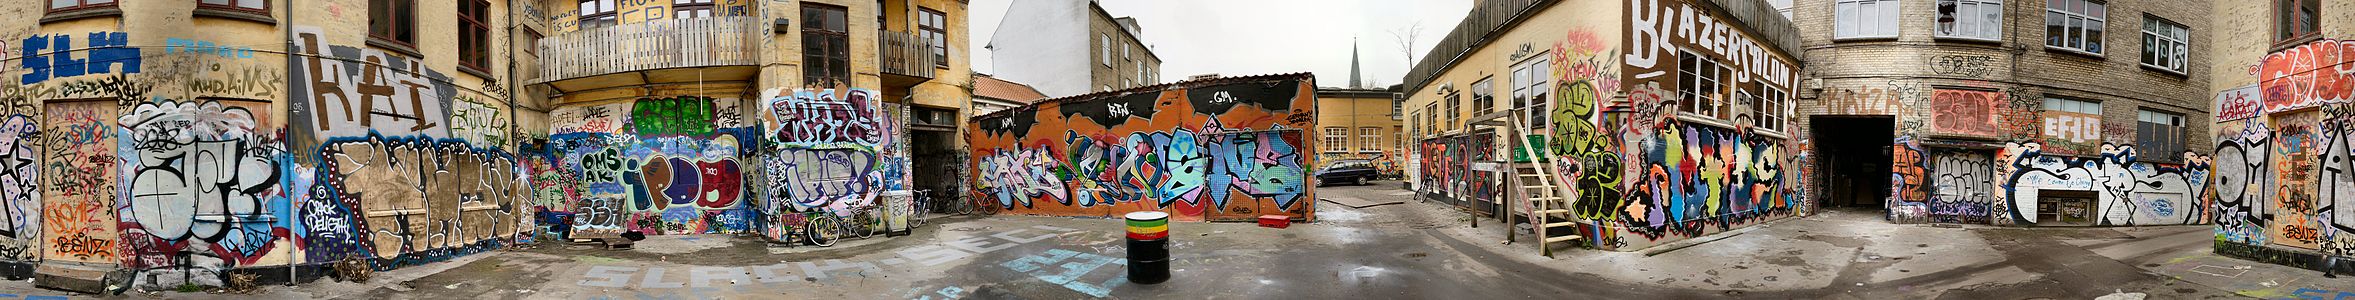 Århus, Danimarka'da üzerlerine graffiti yapılmış sokak arası bina duvarları. (Üreten: Villy Fink Isaksen)